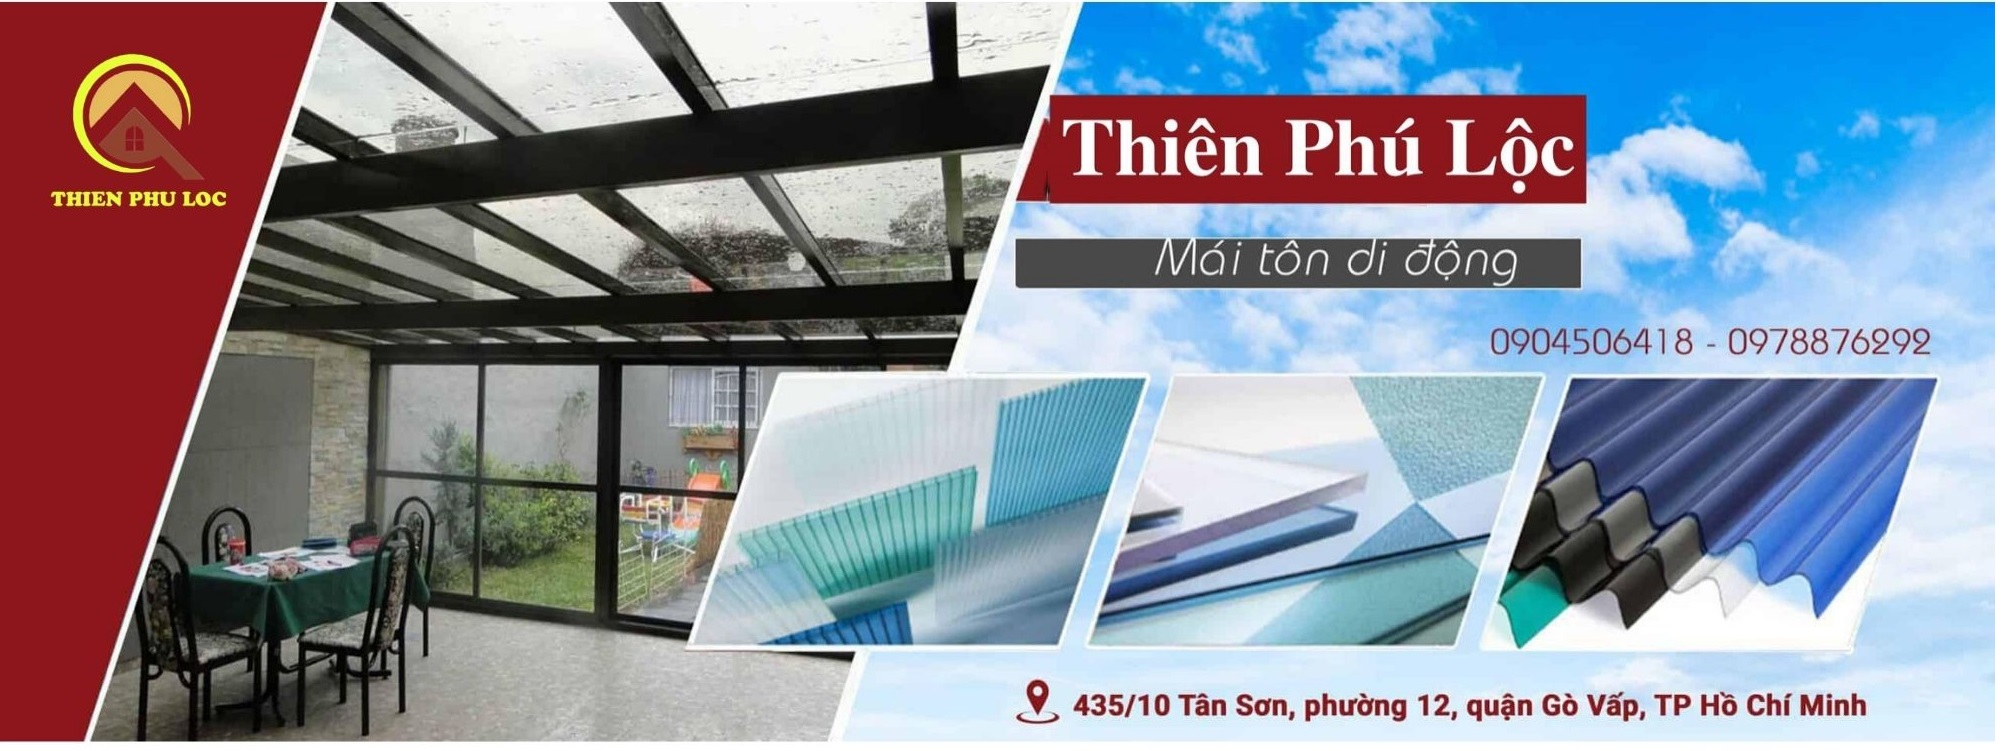 Công ty TNHH Thiên Phú Lộc